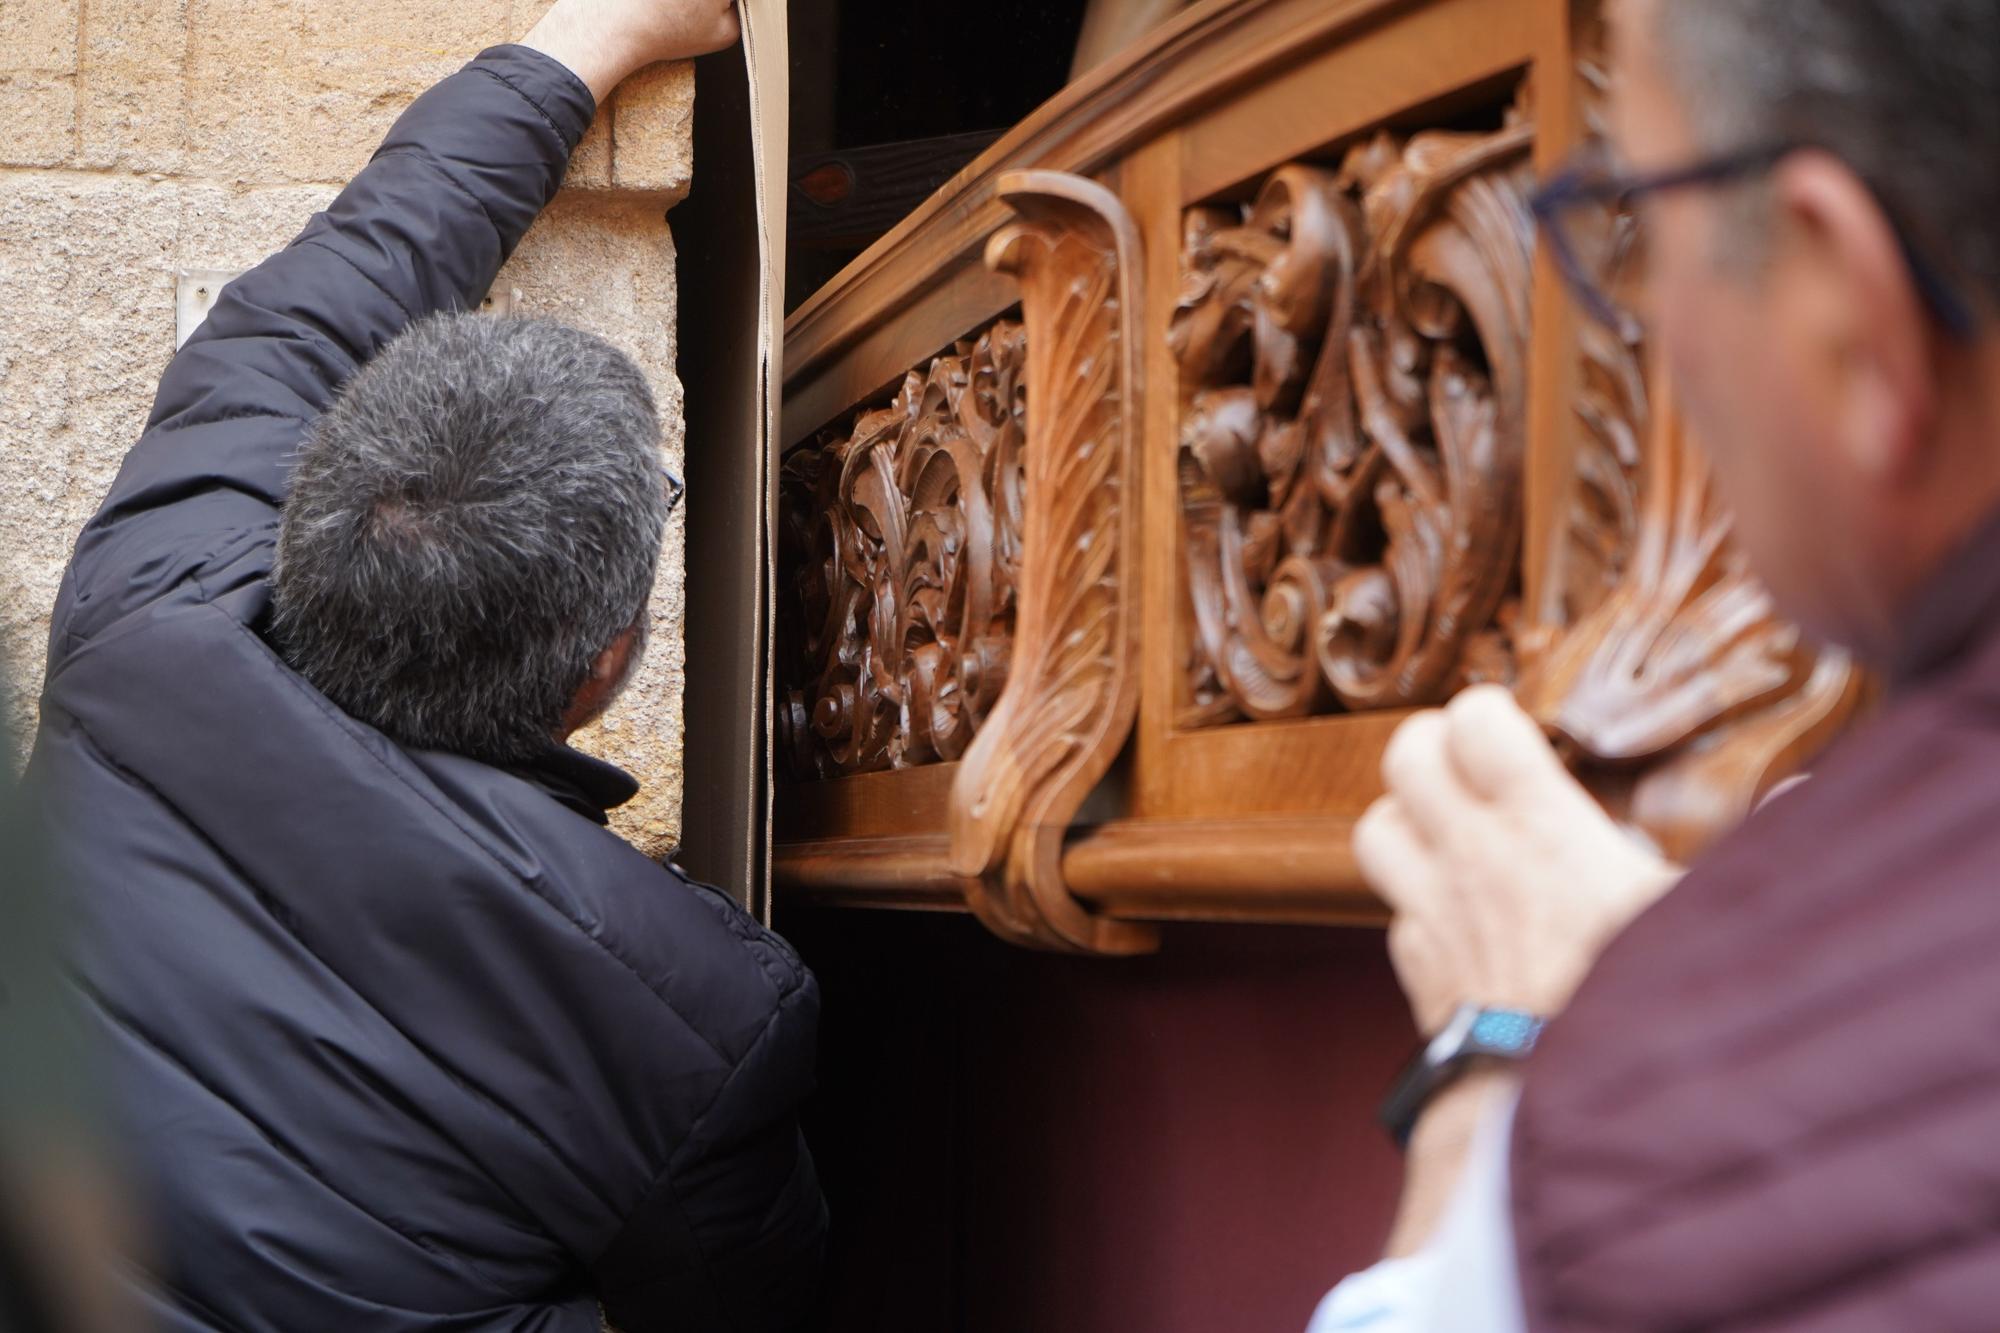 GALERÍA | Las mejores imágenes del "viaje" de pasos a la carpa de la Semana Santa de Zamora